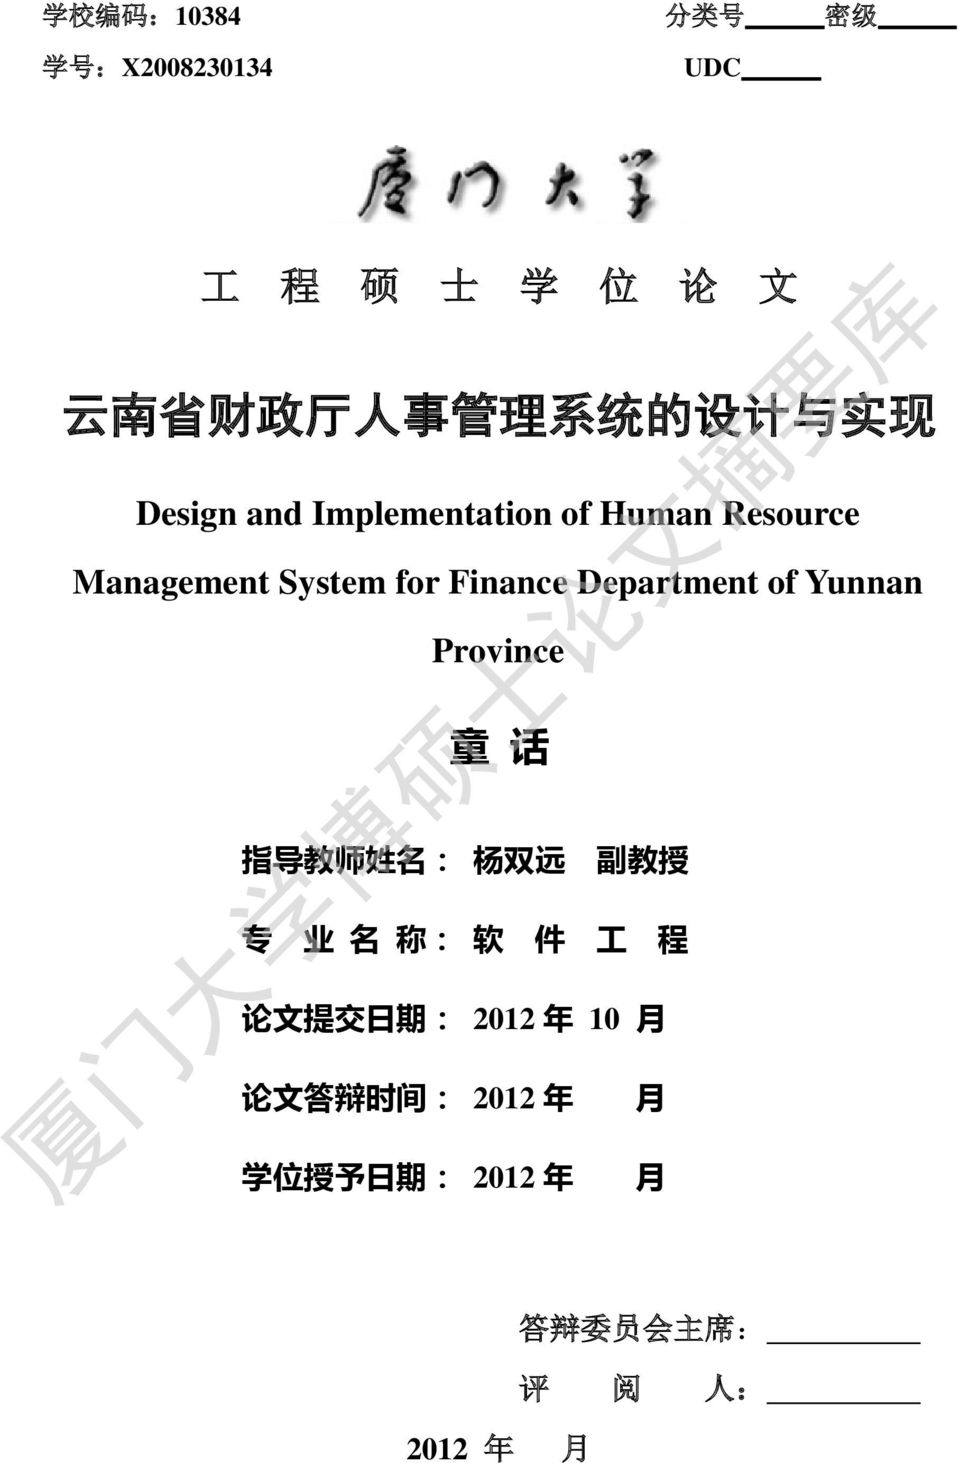 Department of Yunnan Province 童 话 指 导 教 师 姓 名 : 杨 双 远 副 教 授 专 业 名 称 : 软 件 工 程 论 文 提 交 日